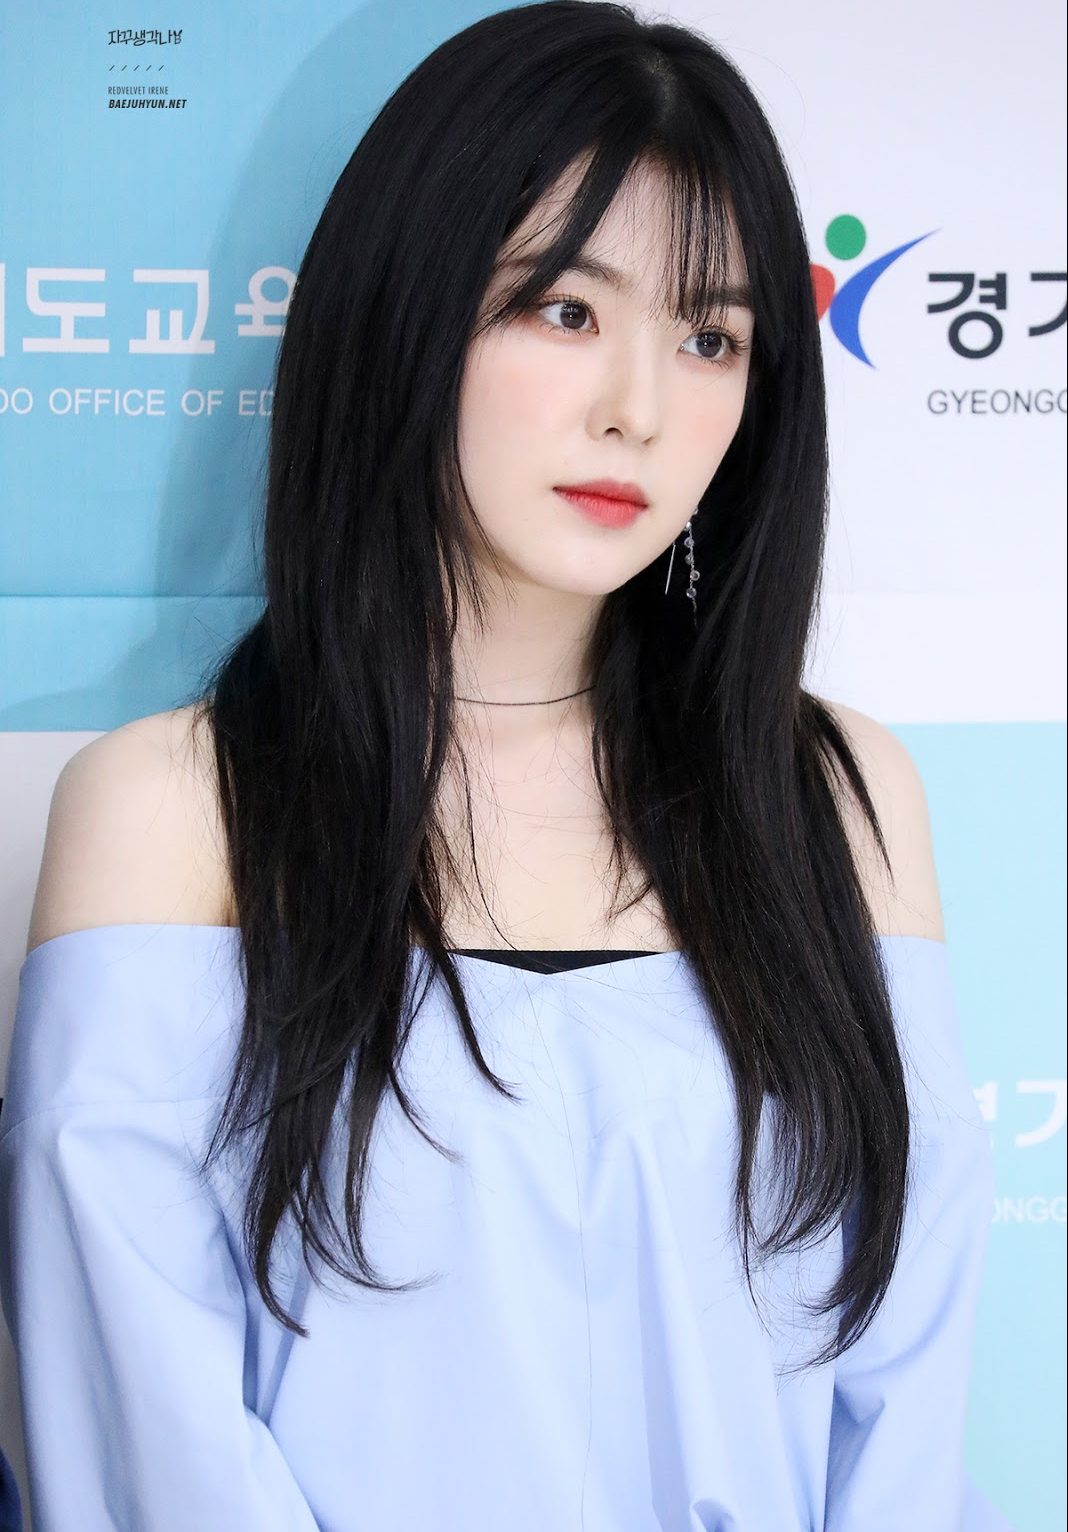 Irene - "Nữ thần" của Red Velvet bị chỉ trích liên tục vì tài năng và nhân cách